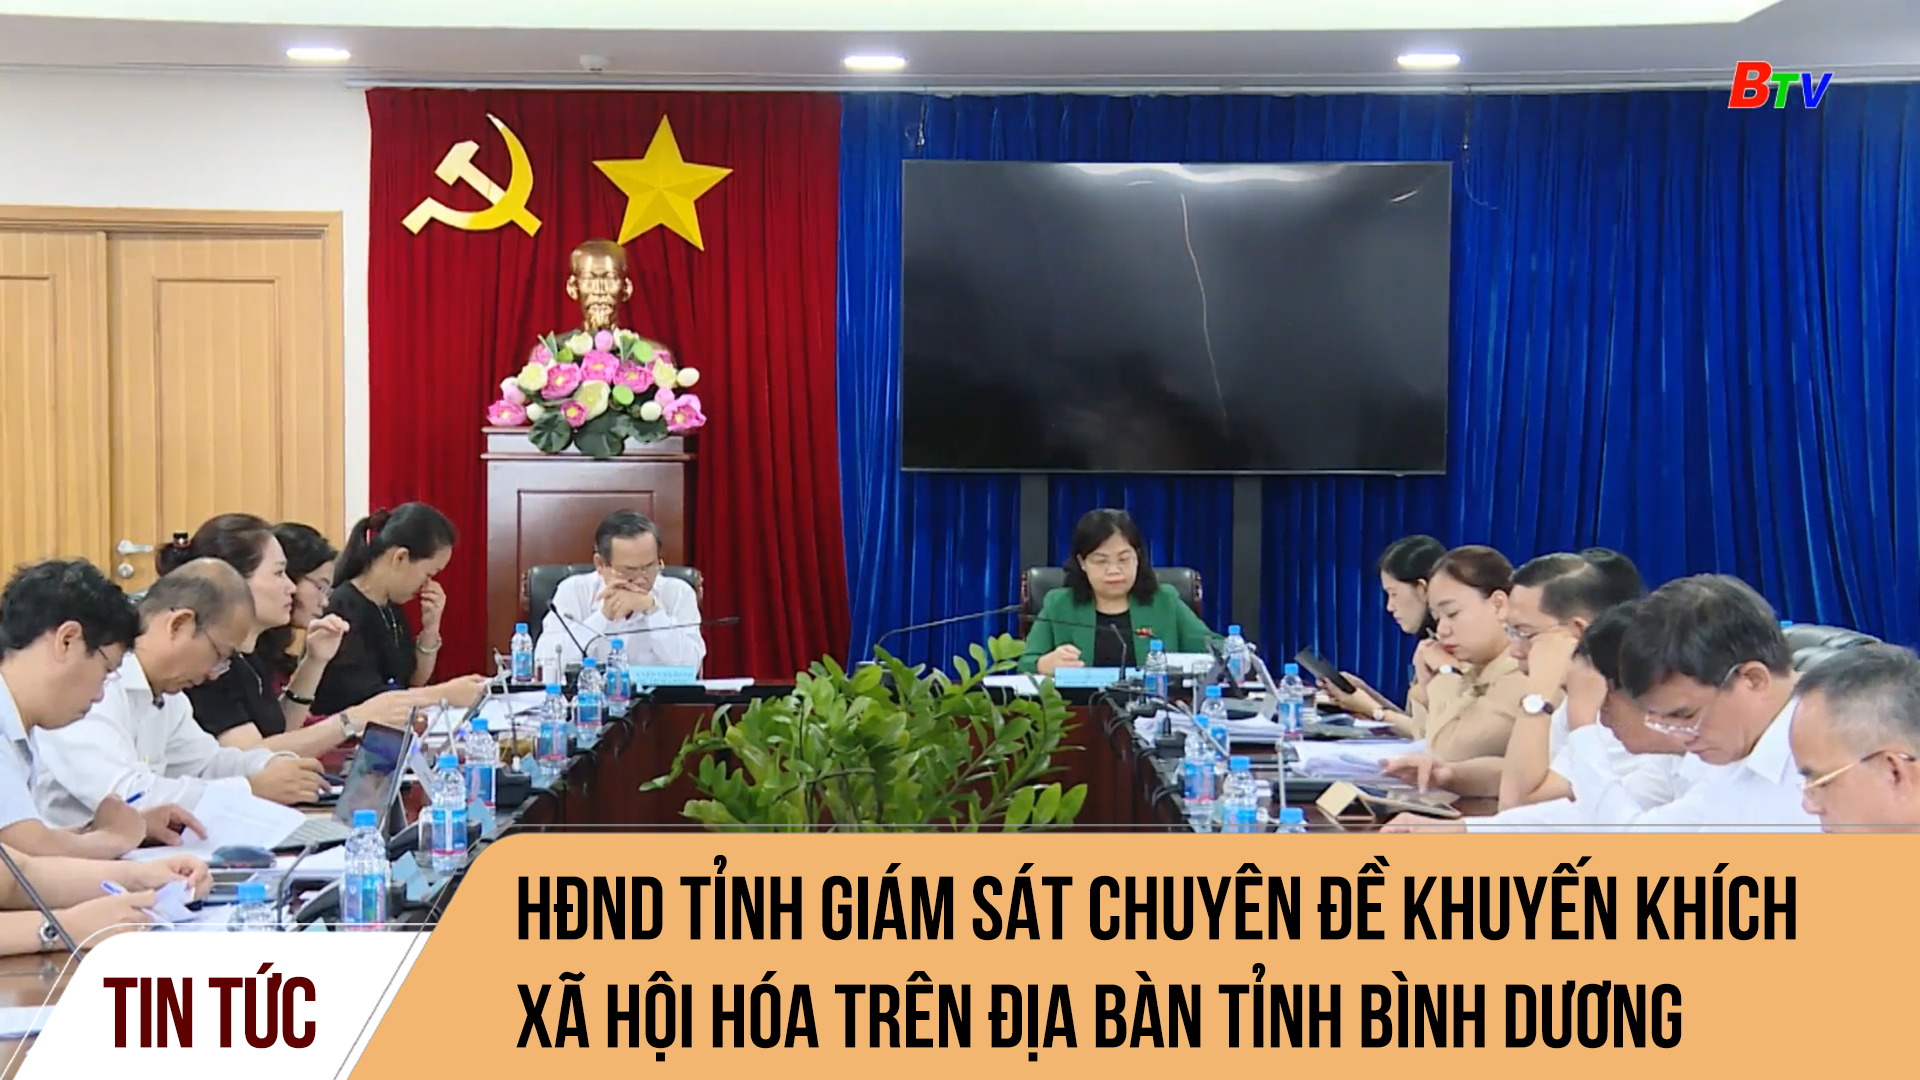 HĐND Tỉnh giám sát chuyên đề khuyến khích xã hội hóa trên địa bàn tỉnh Bình Dương